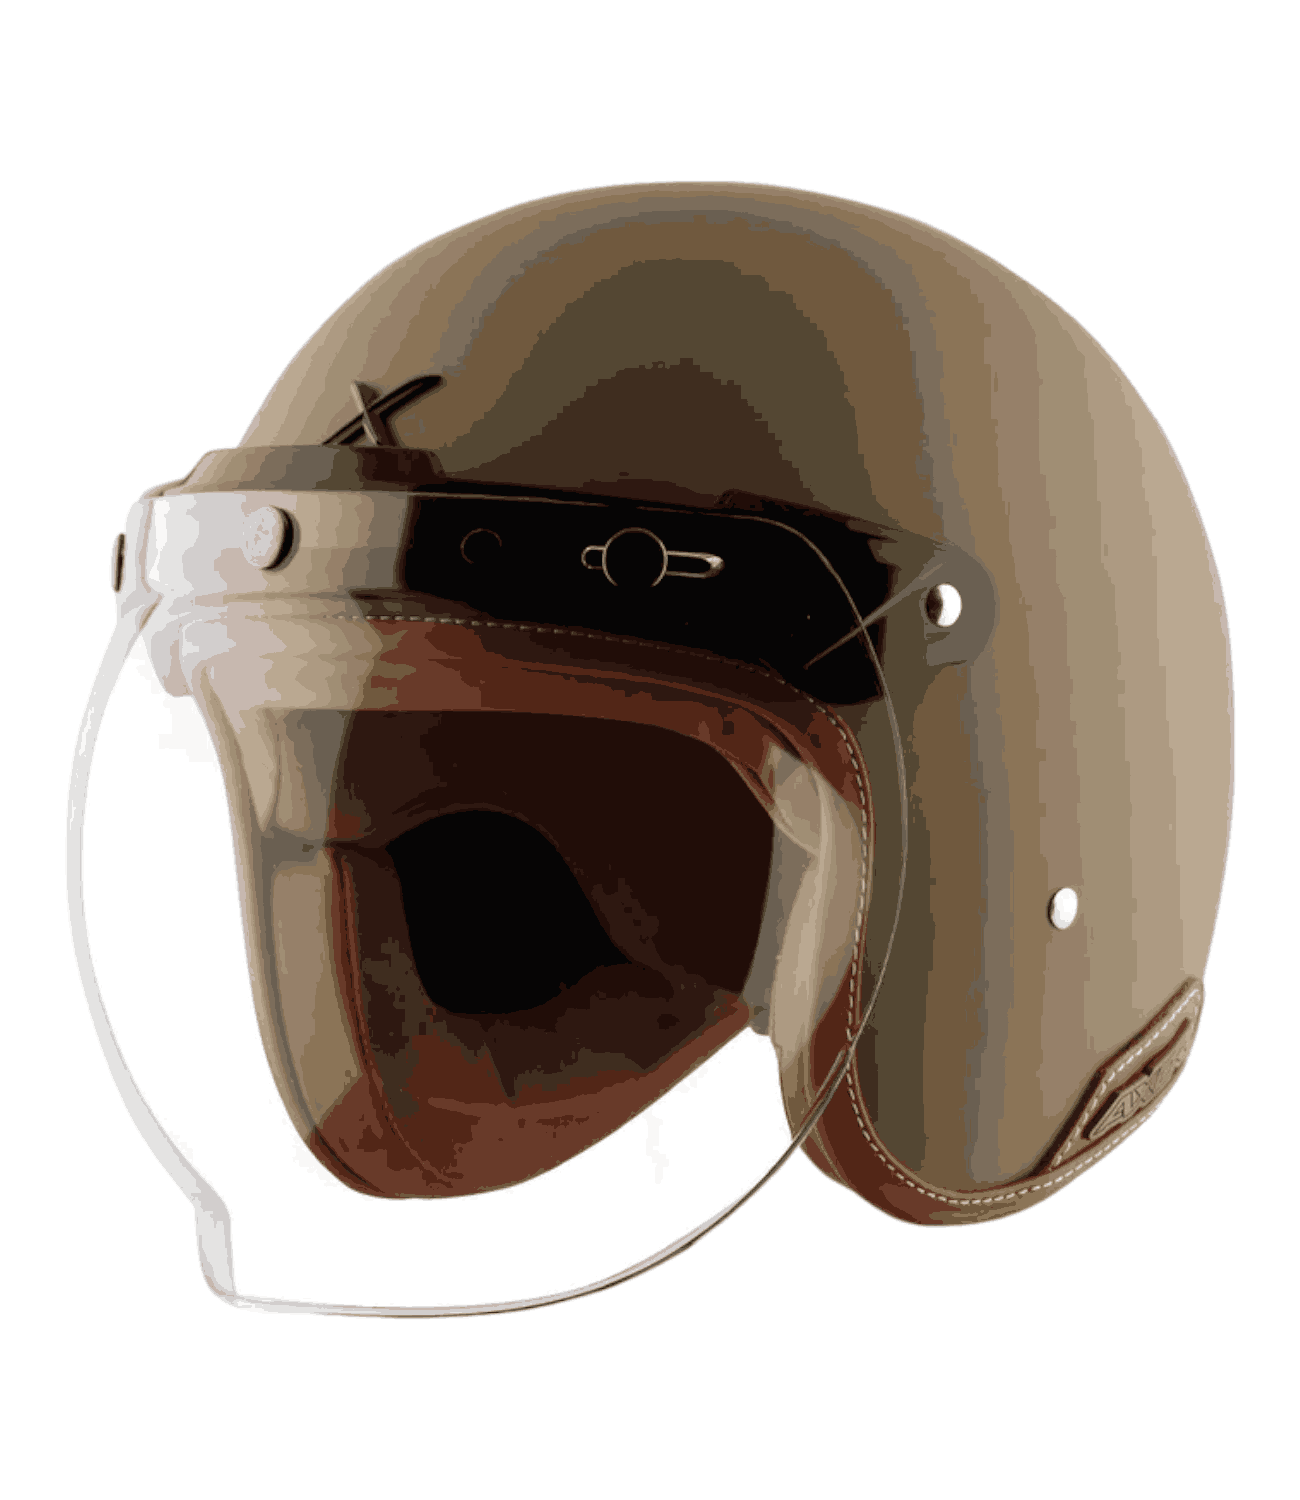 Axor Retro Jet Helmet Dull Desert Storm